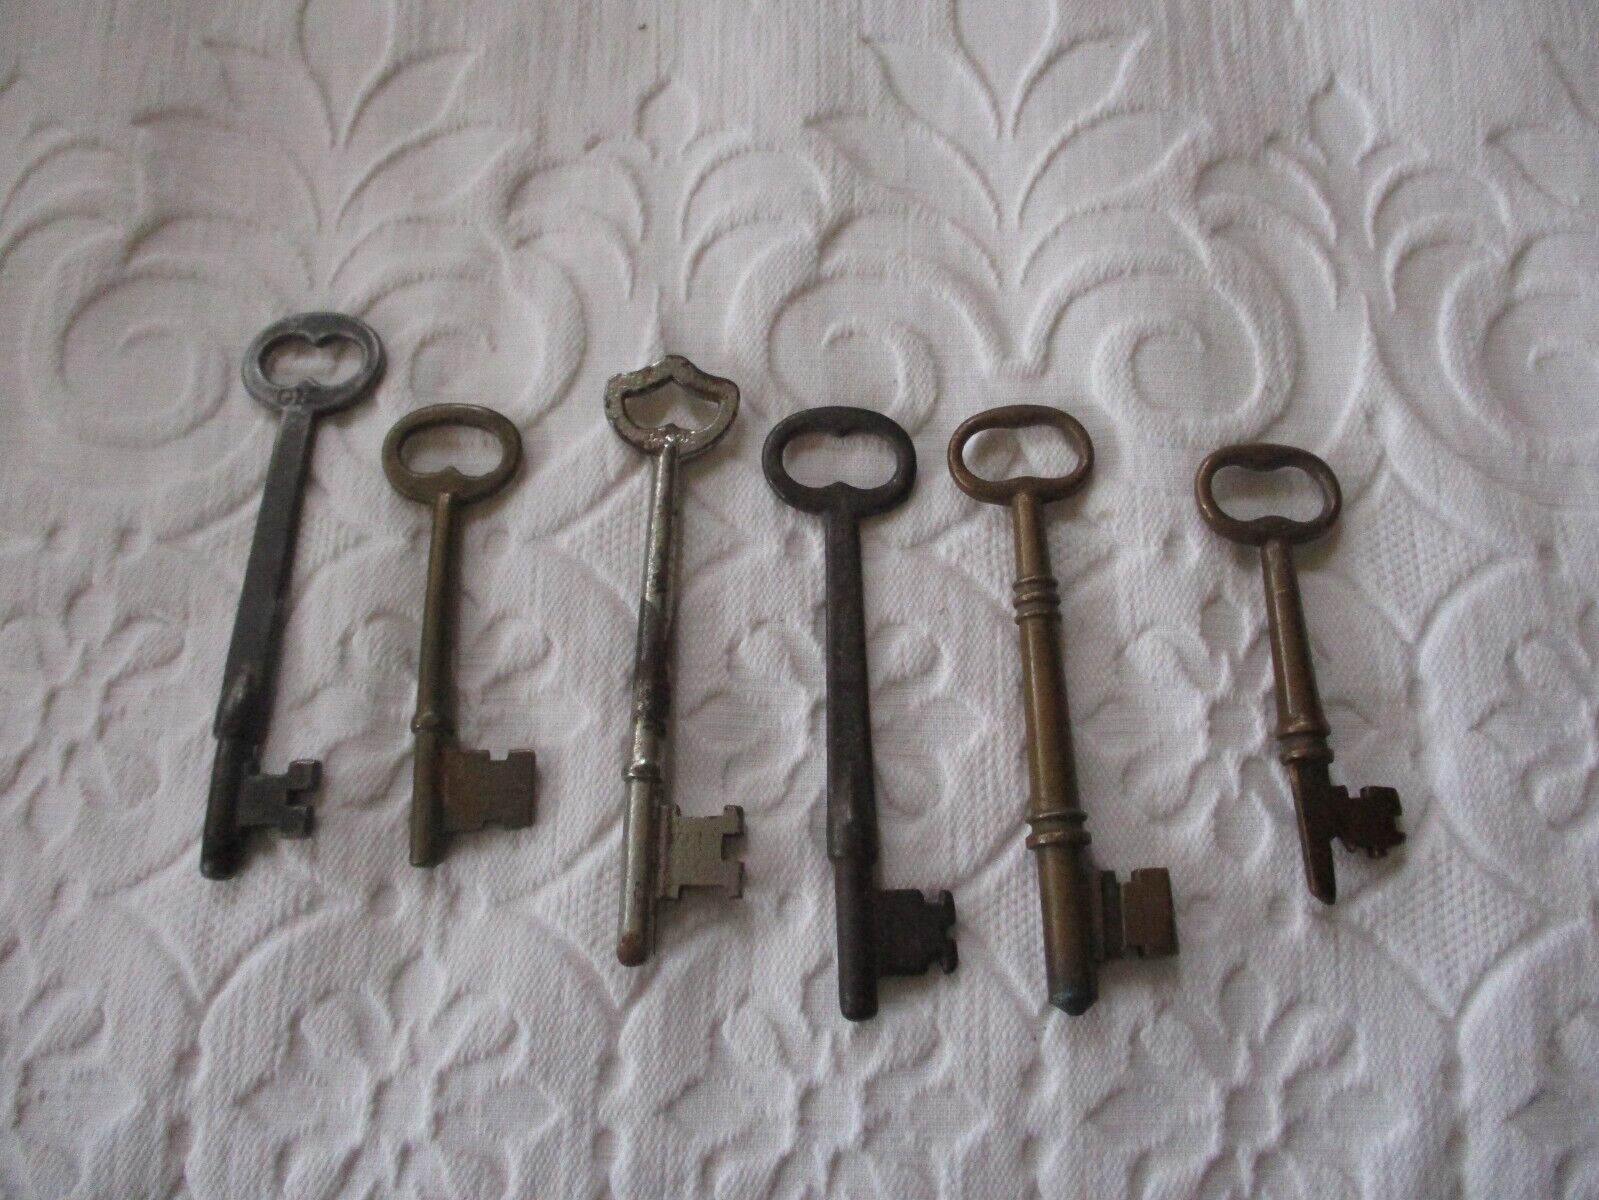 Mixed Lot of 6 Old Vintage Antique Skeleton Keys